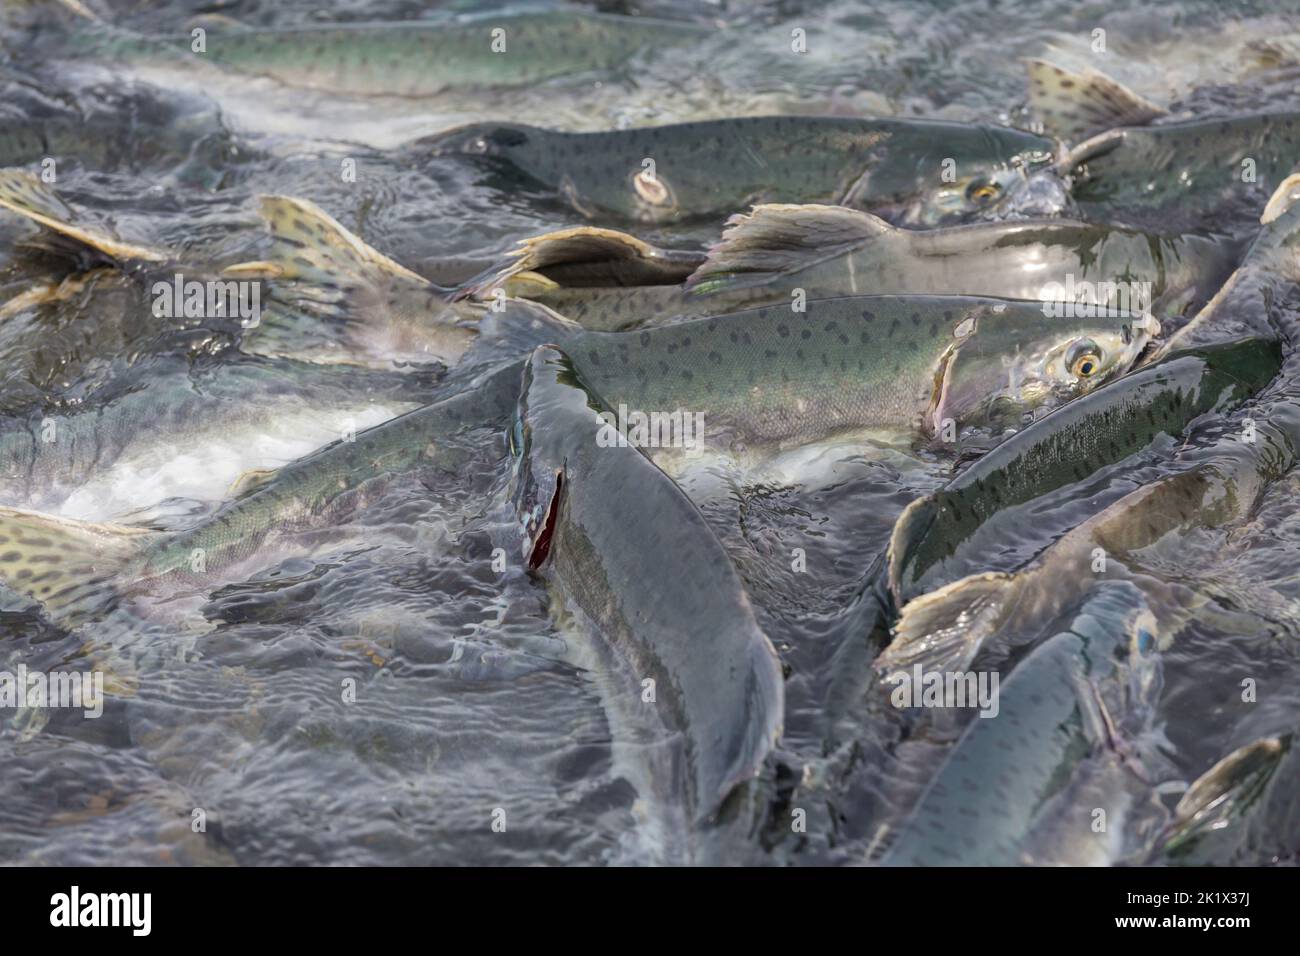 salmon spawning in Alaska river Stock Photo